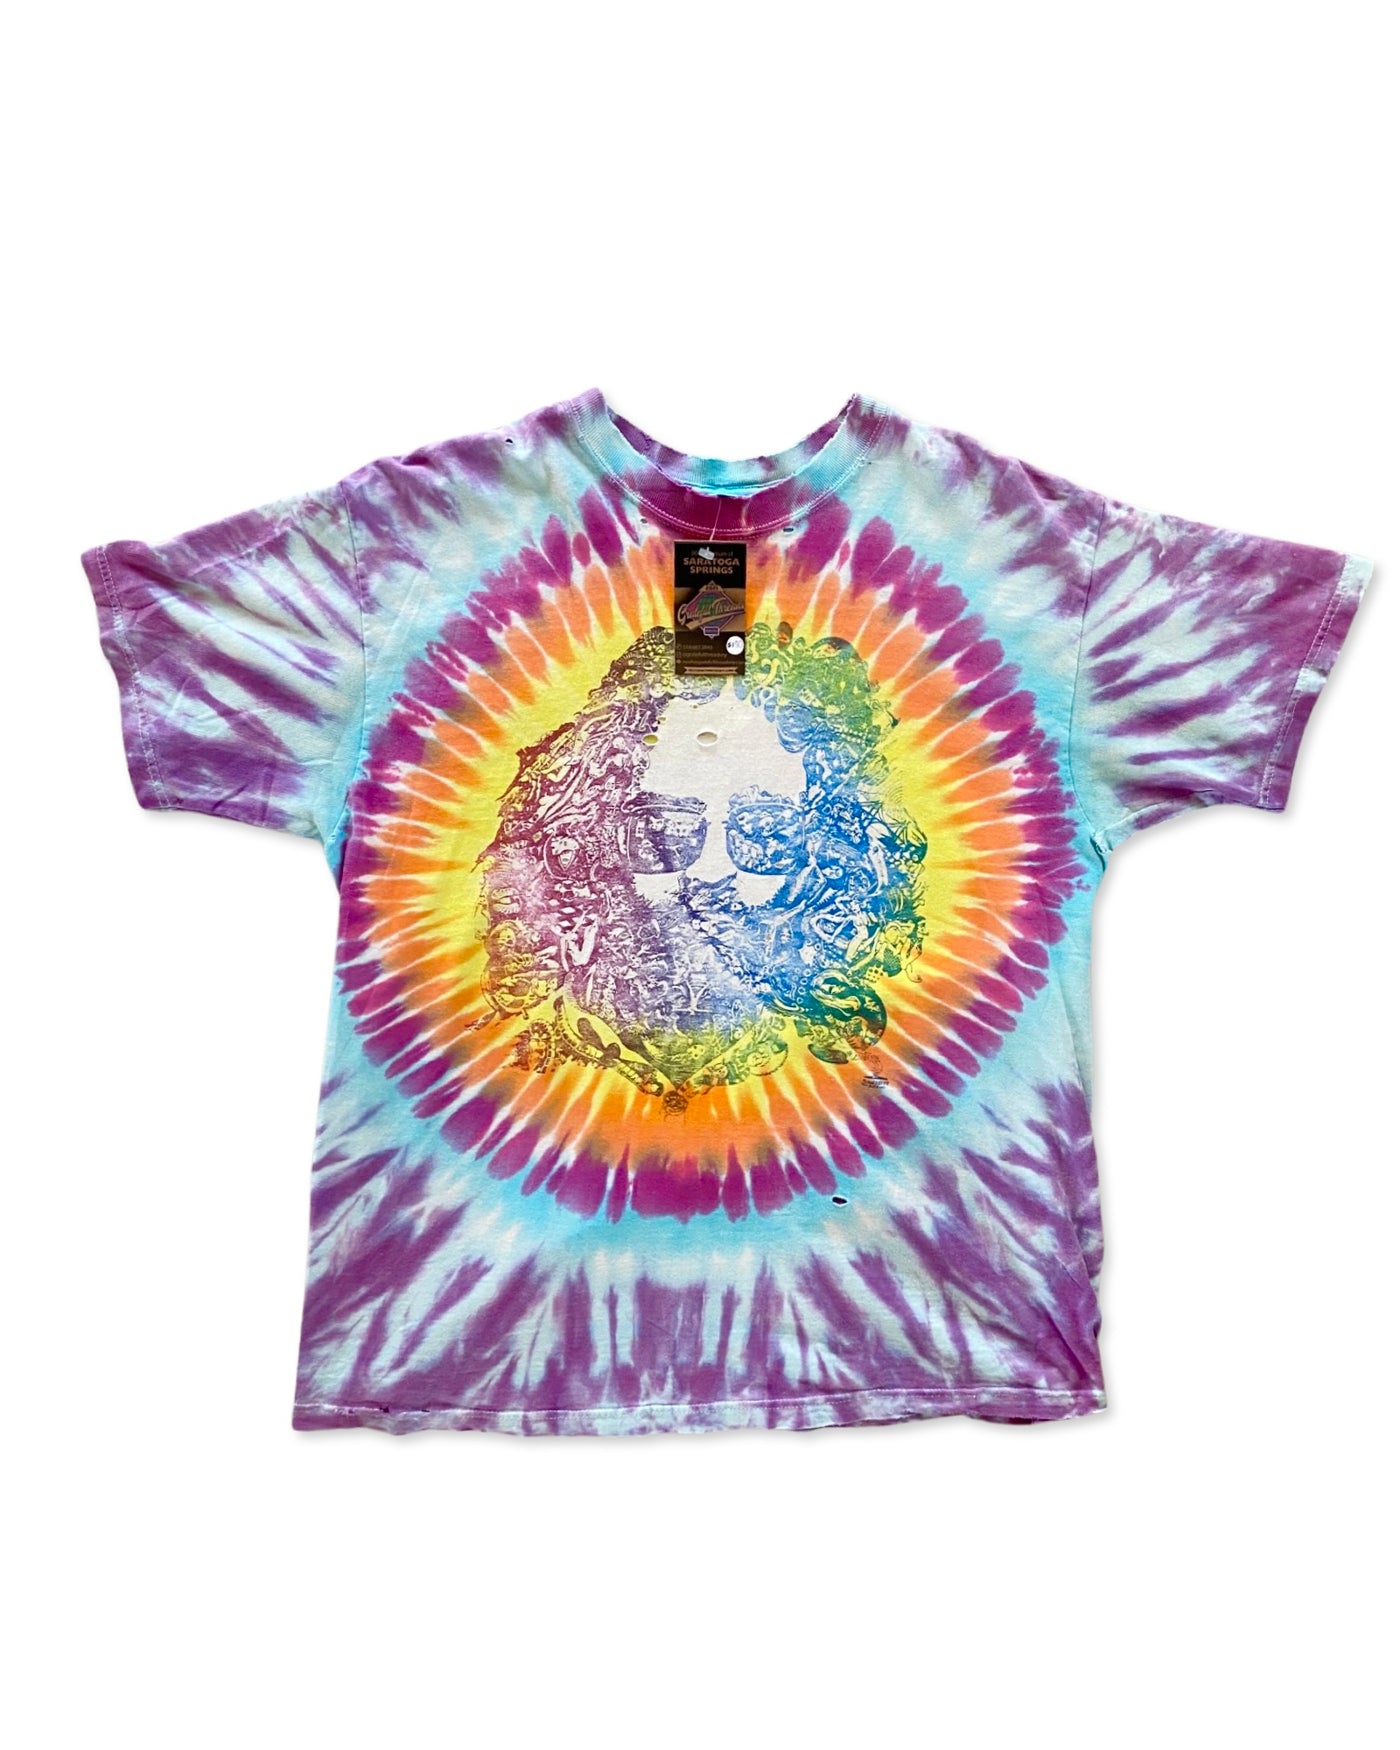 Vintage 1995 Jerry Grateful Dead ‘Singer is Gone’ T-Shirt